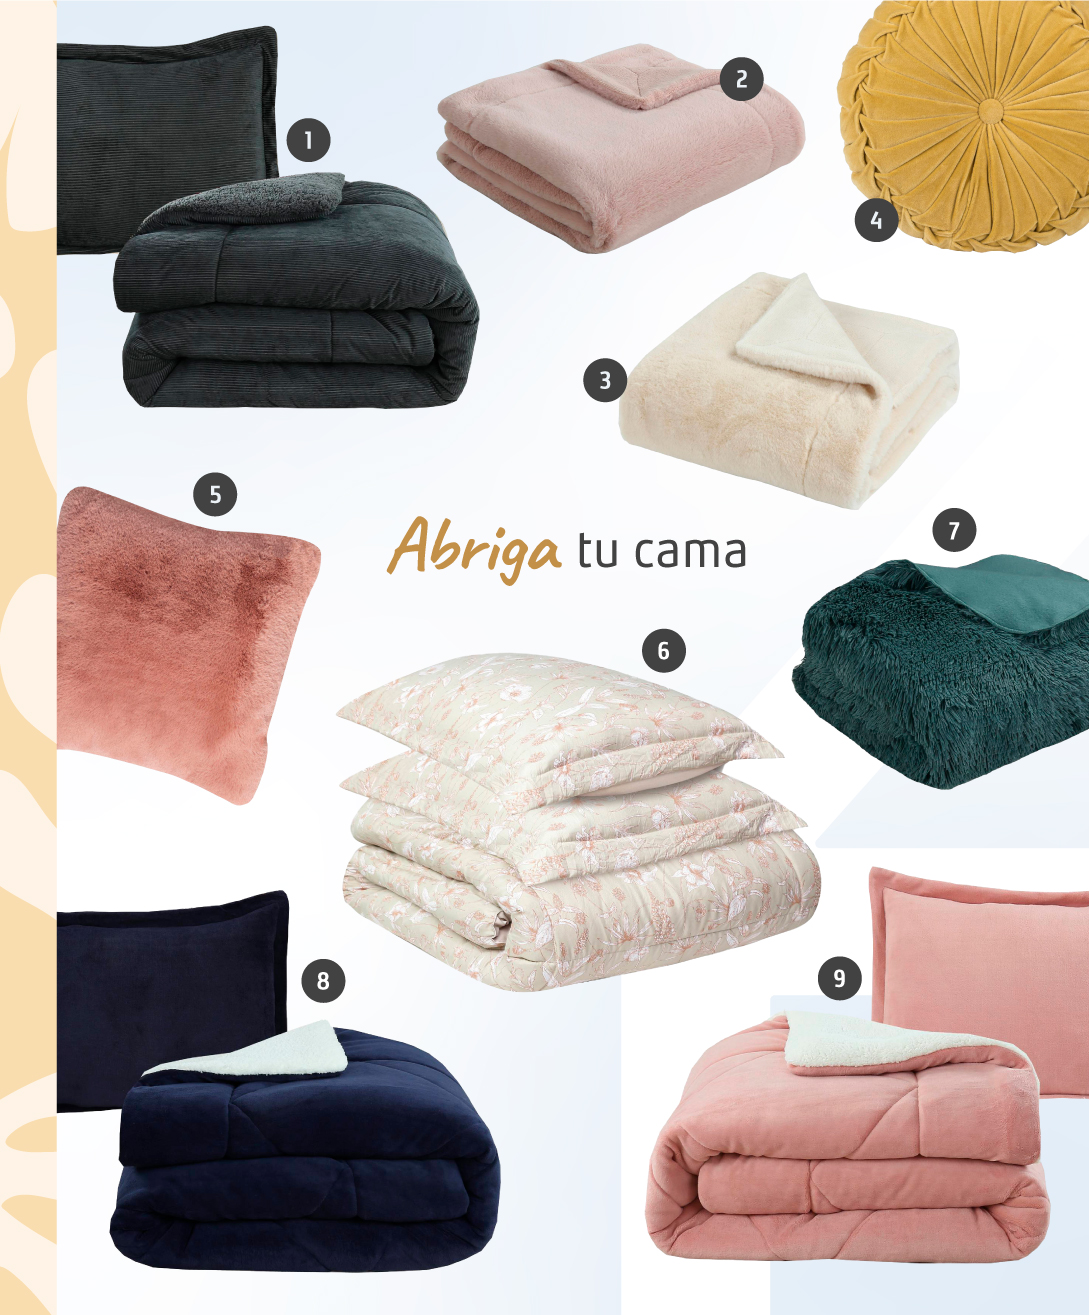 Moodboard con productos Sodimac para abrigar tu cama. Incluye plumones, frazadas y cojines de diferentes materiales y colores.